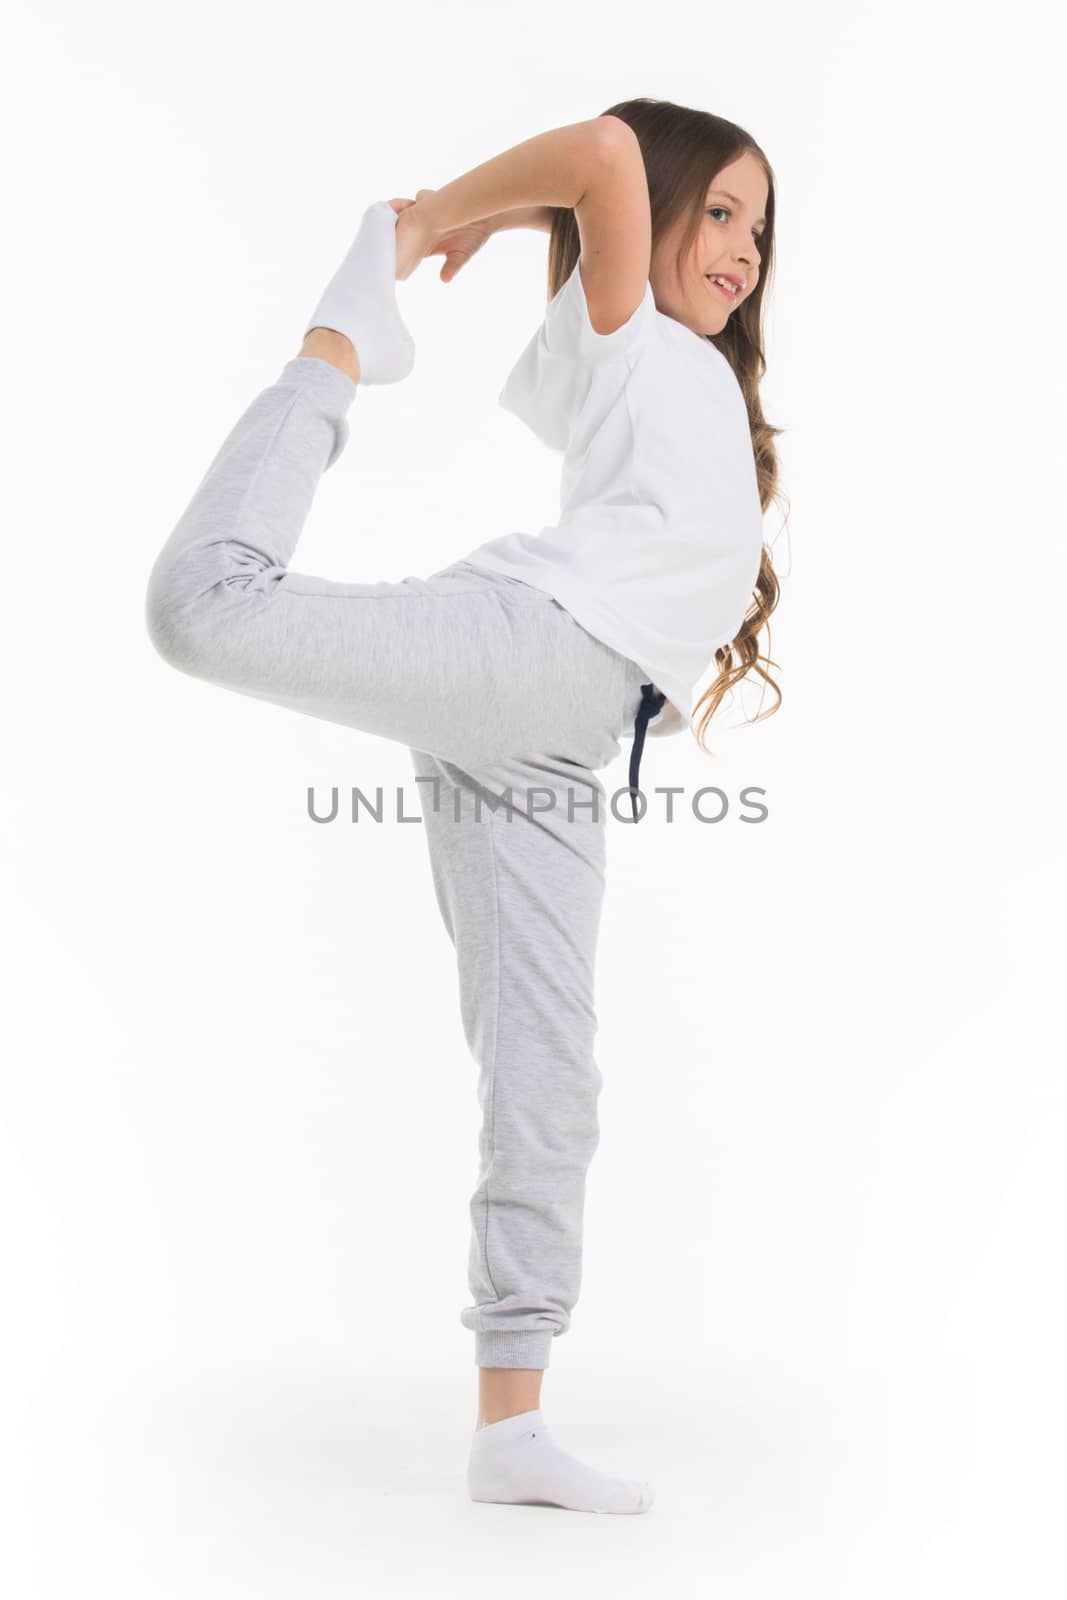 Gild doing stretching exercise isolated on white background